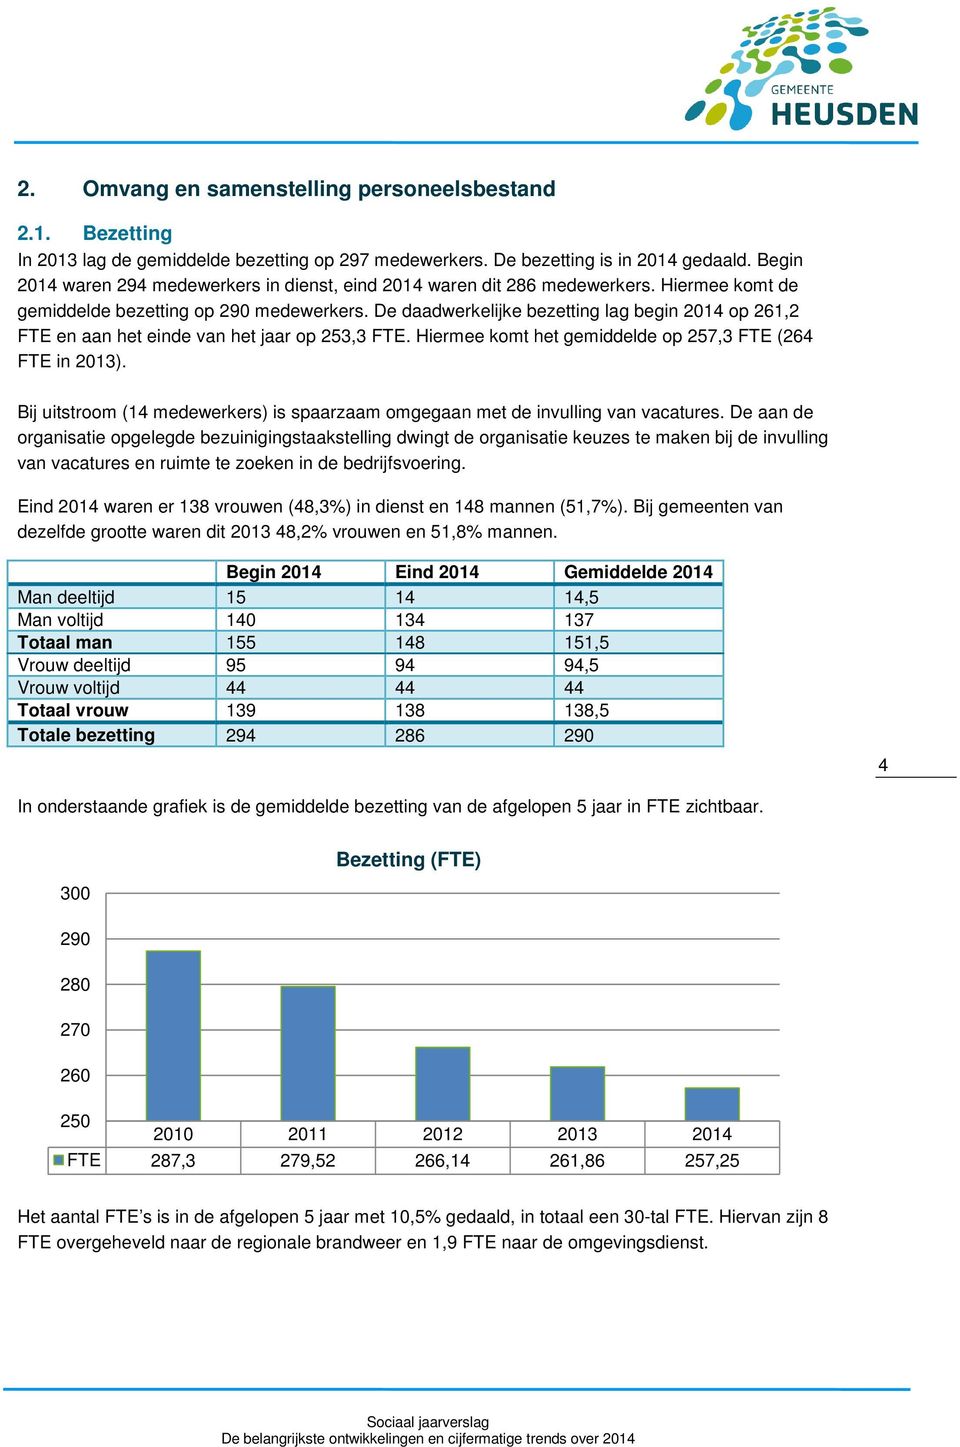 De daadwerkelijke bezetting lag begin 2014 op 261,2 FTE en aan het einde van het jaar op 253,3 FTE. Hiermee komt het gemiddelde op 257,3 FTE (264 FTE in 2013).